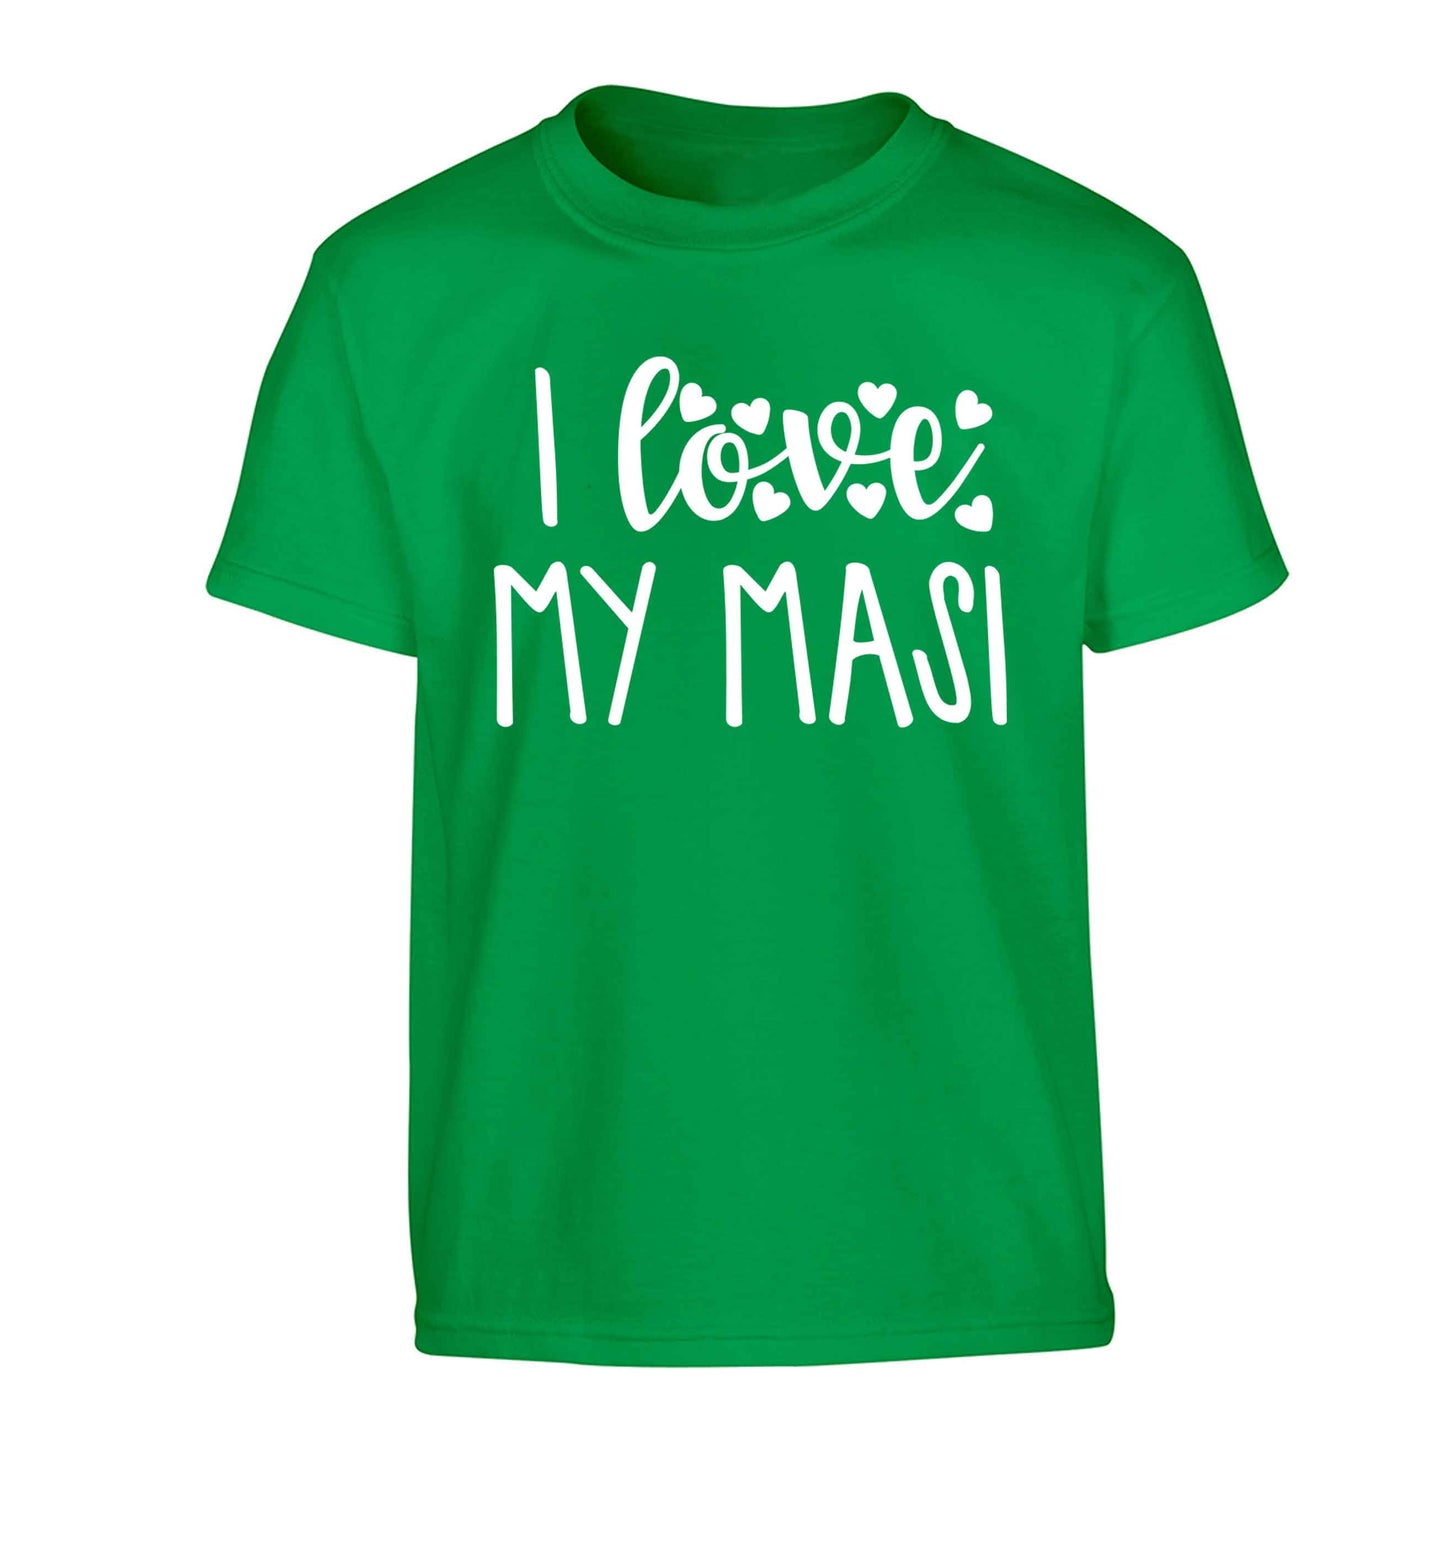 I love my masi Children's green Tshirt 12-13 Years